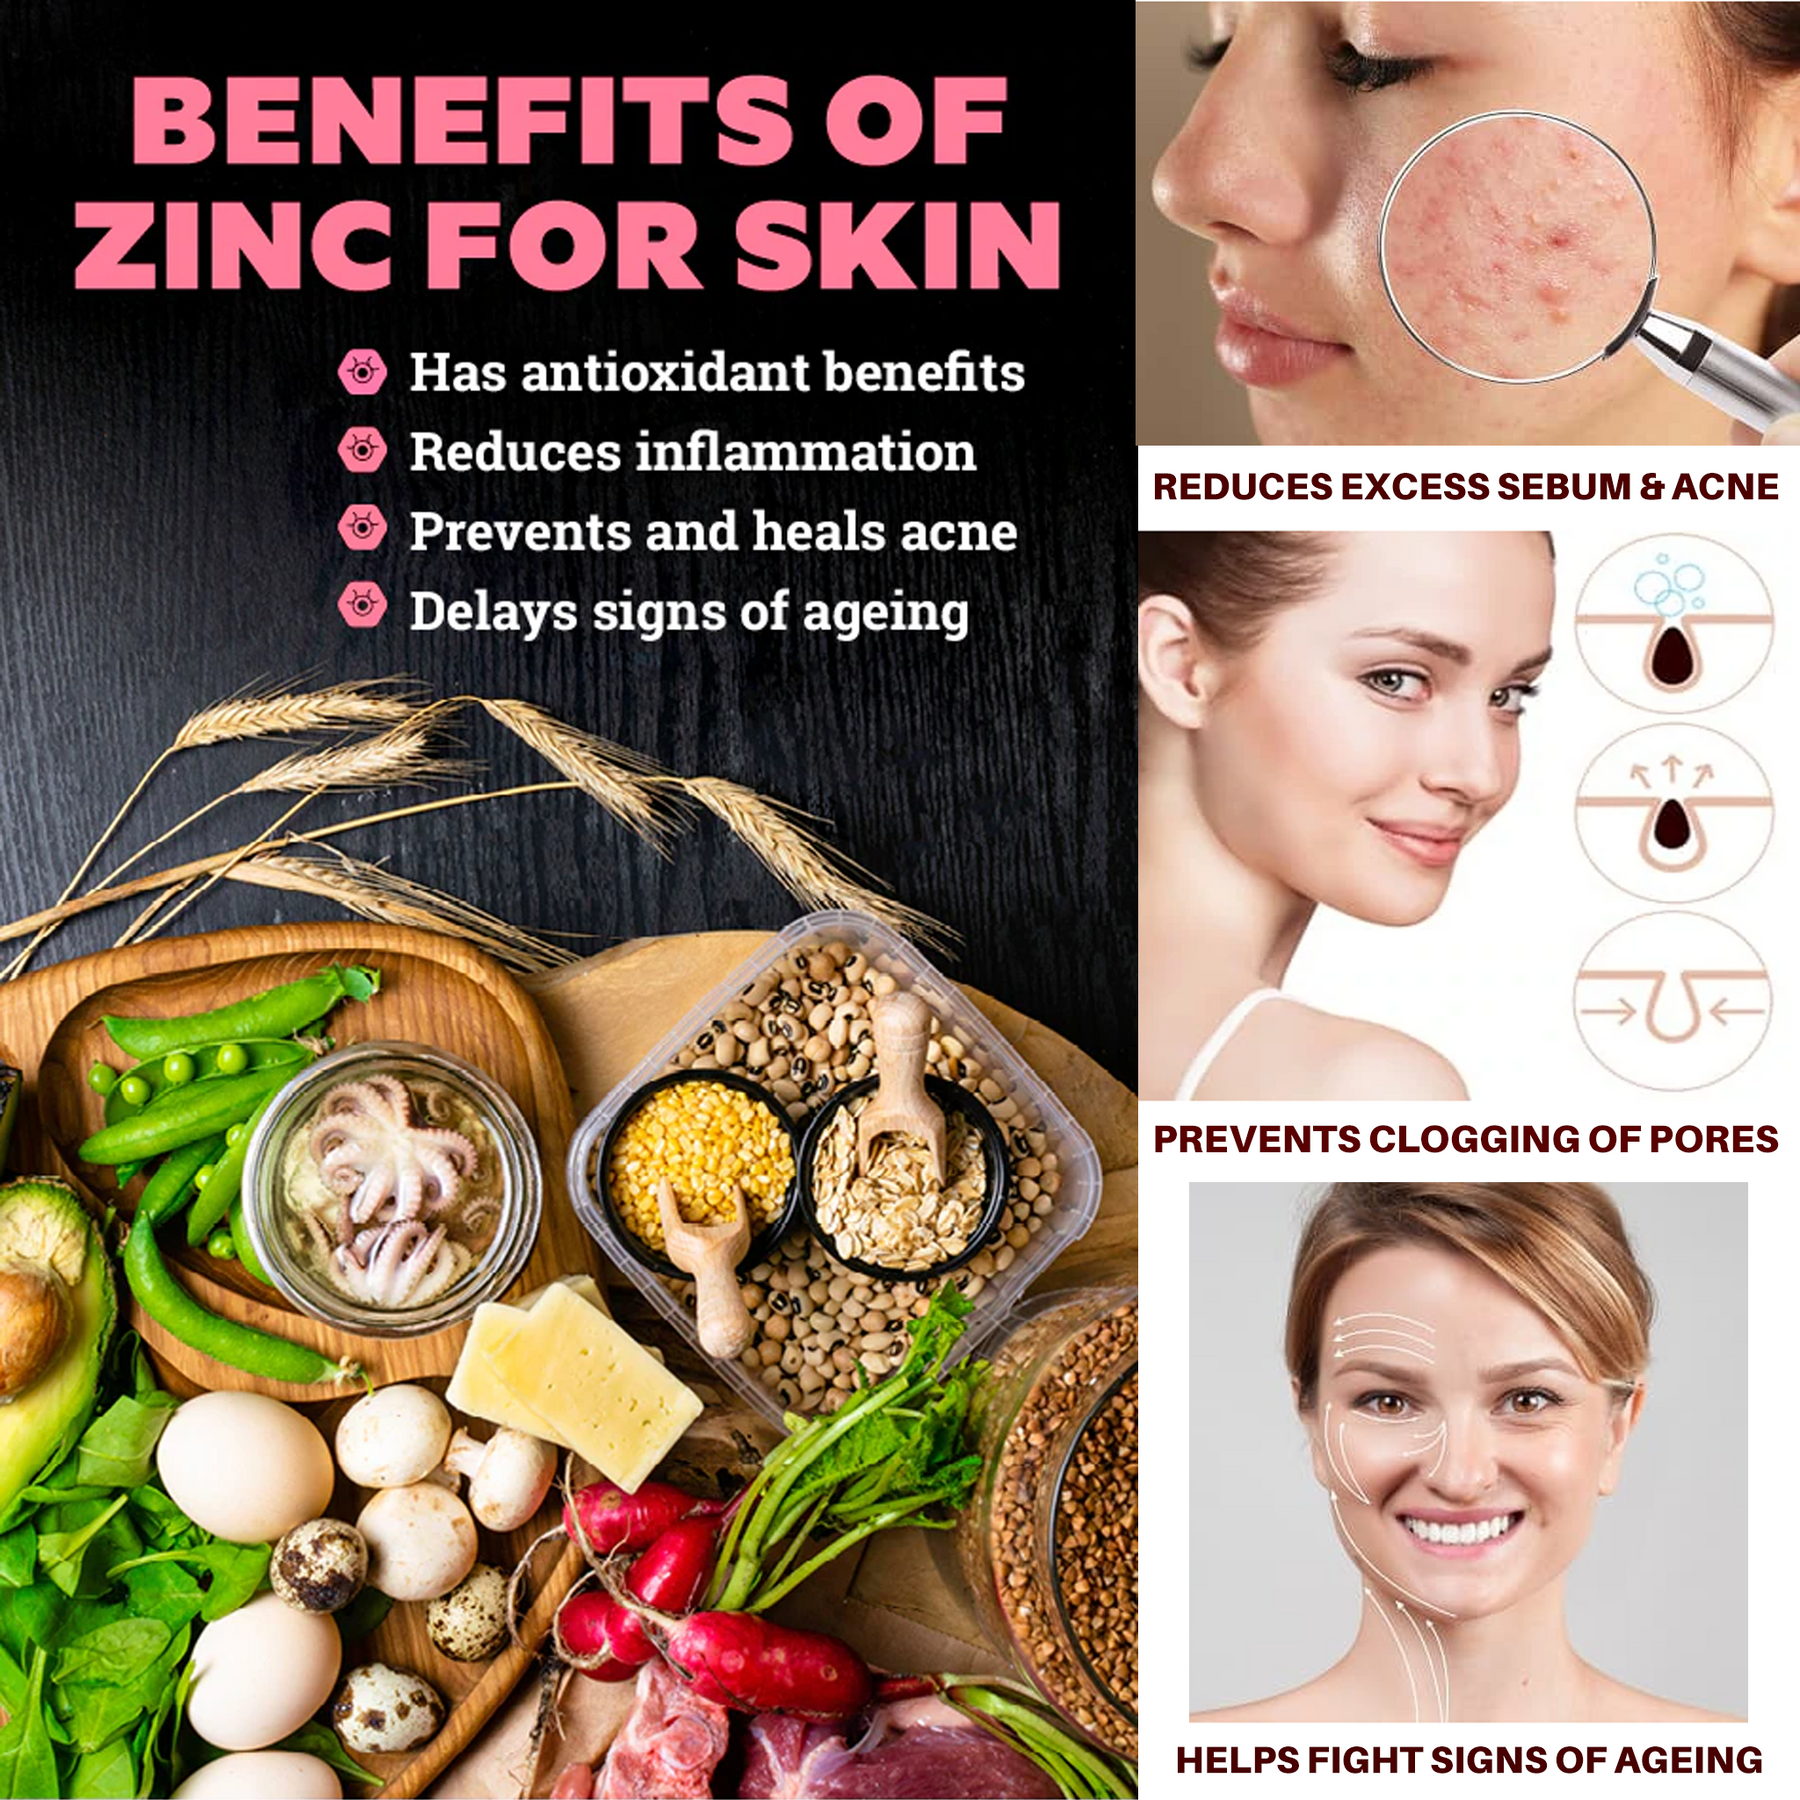 Zinc (Gluconato) 50mg | 180 Cápsulas Veganas | Suministro para 6 meses | Cápsulas de zinc puro de máxima resistencia | Salud inmune, ocular y de la piel | Hecho en el Reino Unido